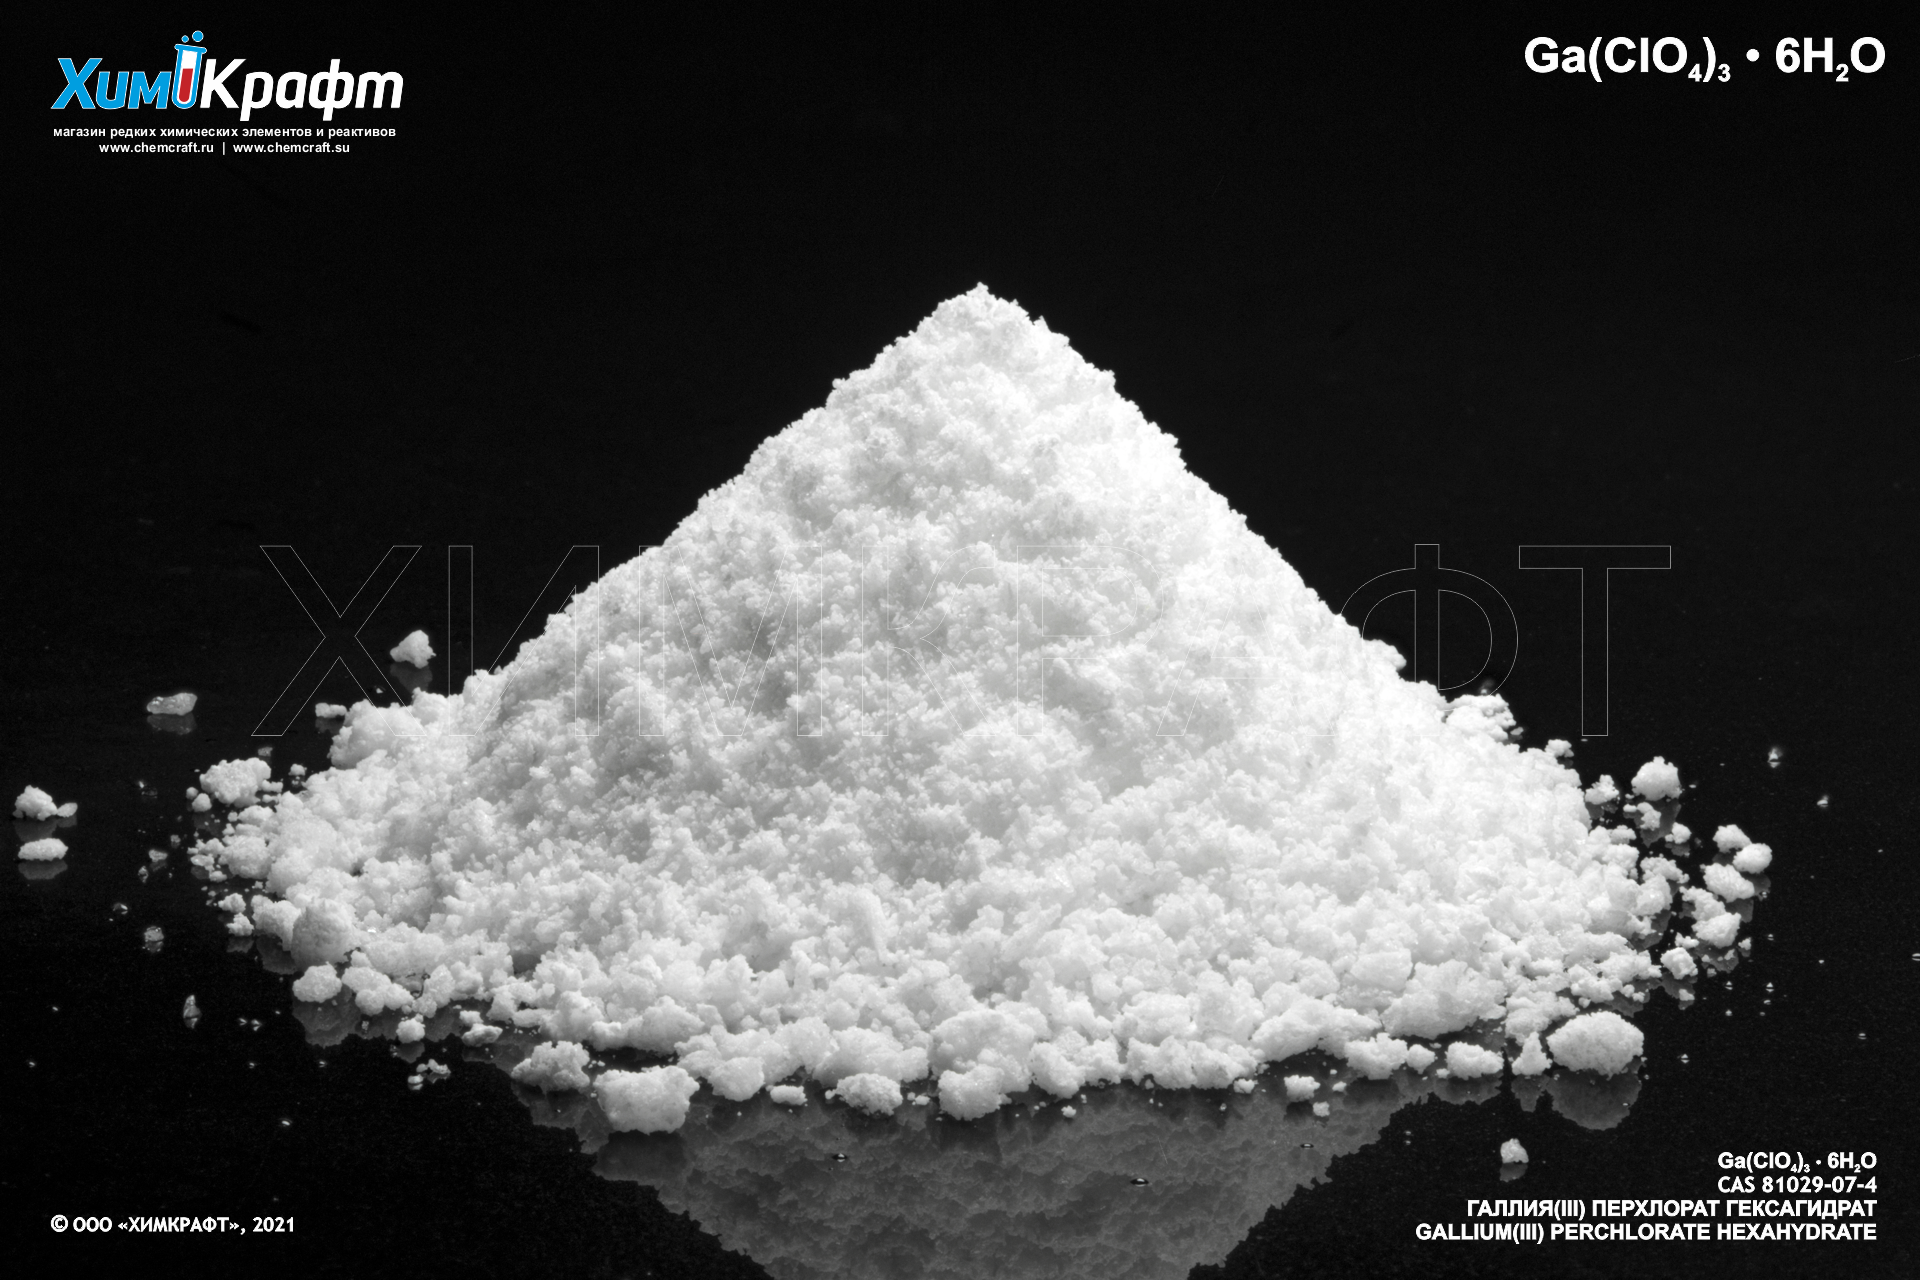 Галлия (III) перхлорат гексагидрат, 99.9%